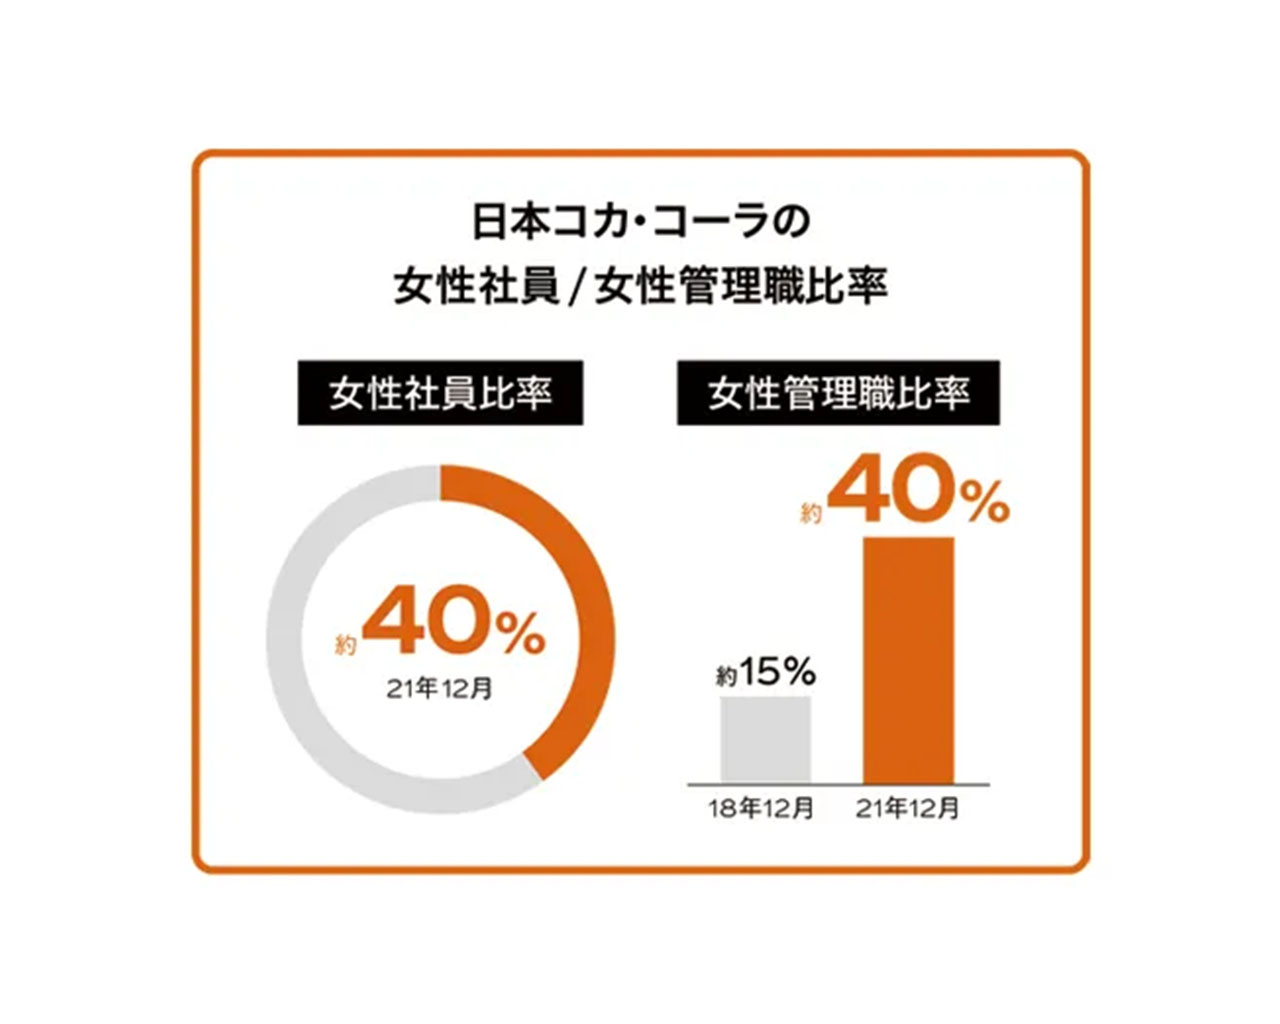 日本コカ・コーラの女性社員・管理職比率